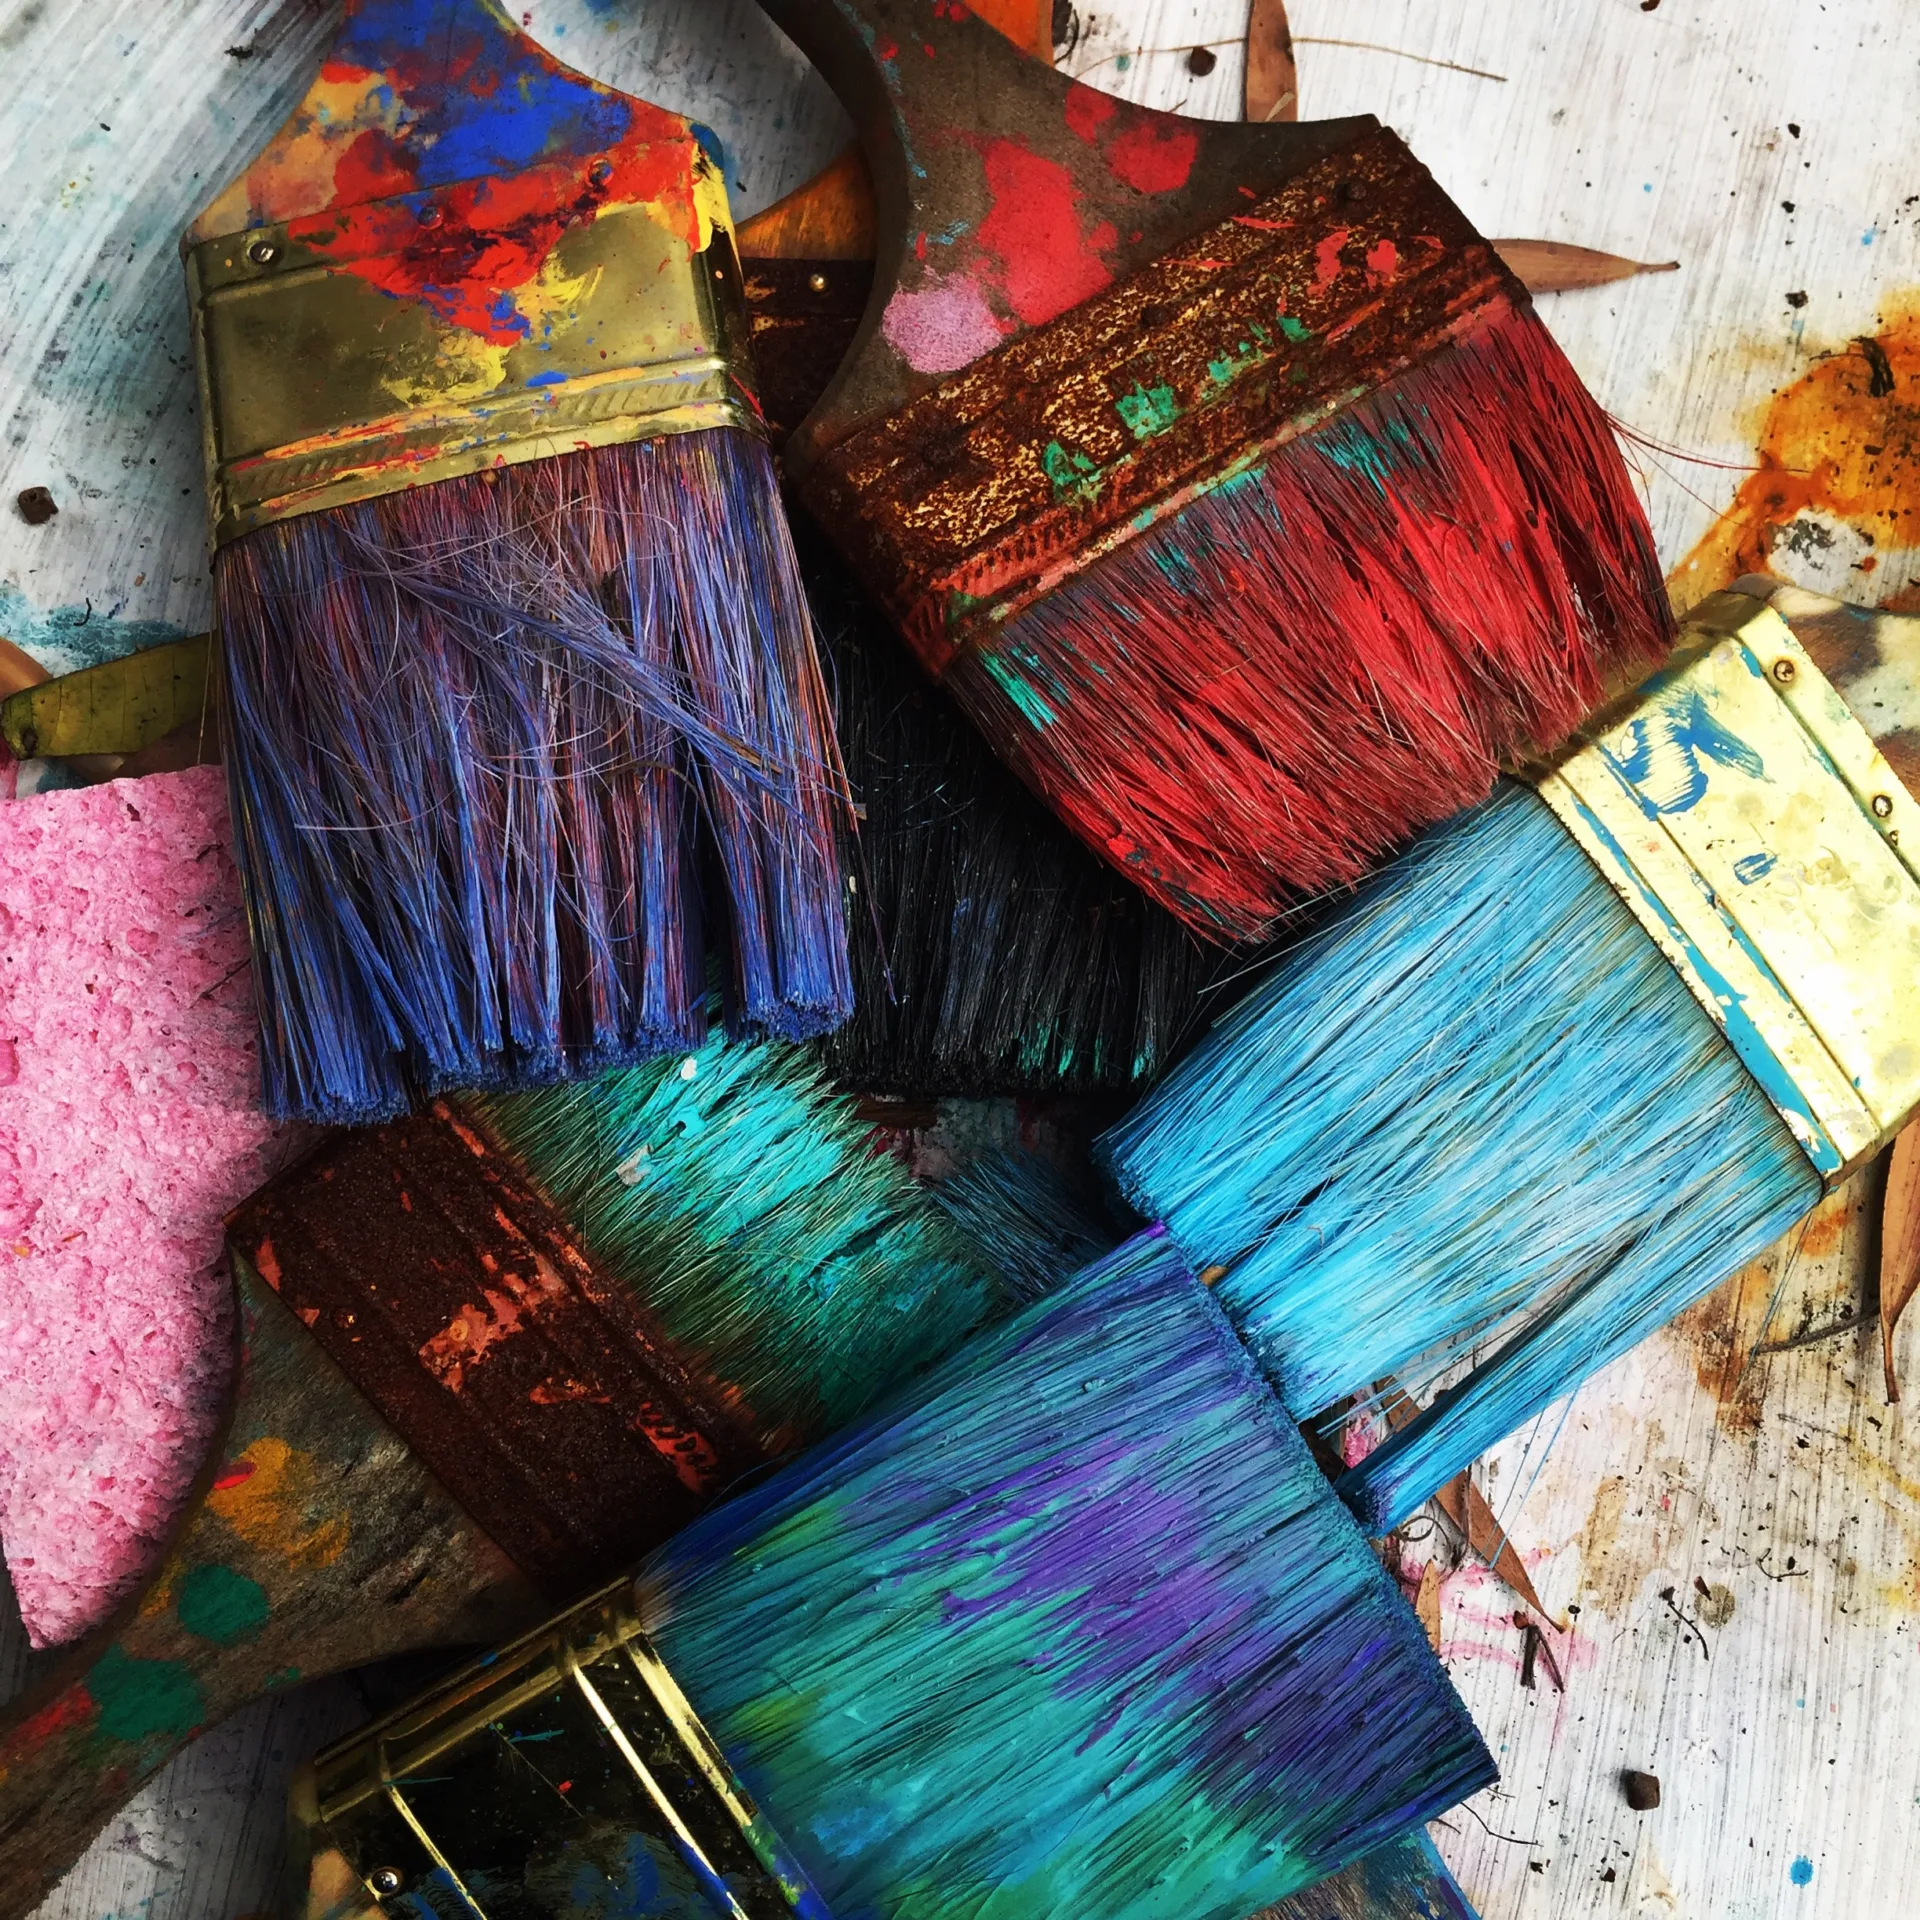 Verschiedenfarbige, mit Farbe verschmierte Pinsel liegen kreuz und quer auf einem mit Farbspritzern bedeckten Untergrund - Kreative Pause bei Schulstress.